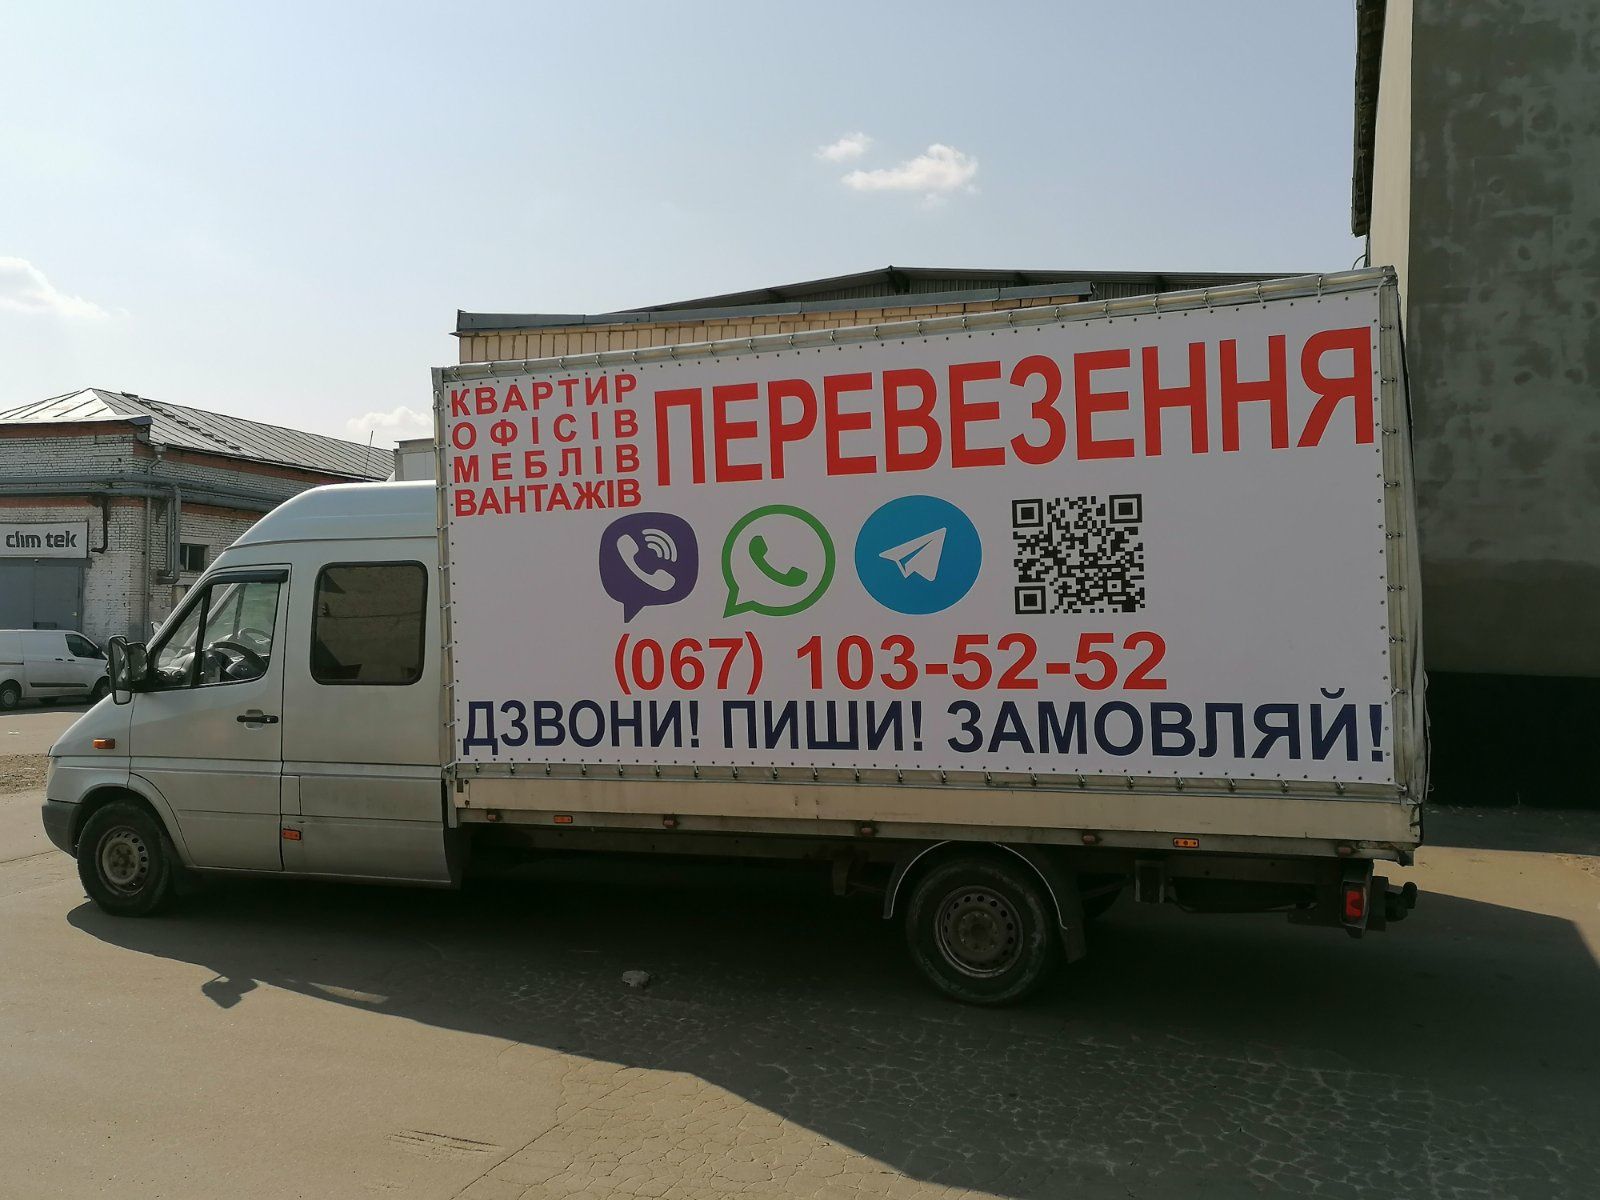 Мобильная реклама на грузовом автомобиле Киев. Поздравления на авто.